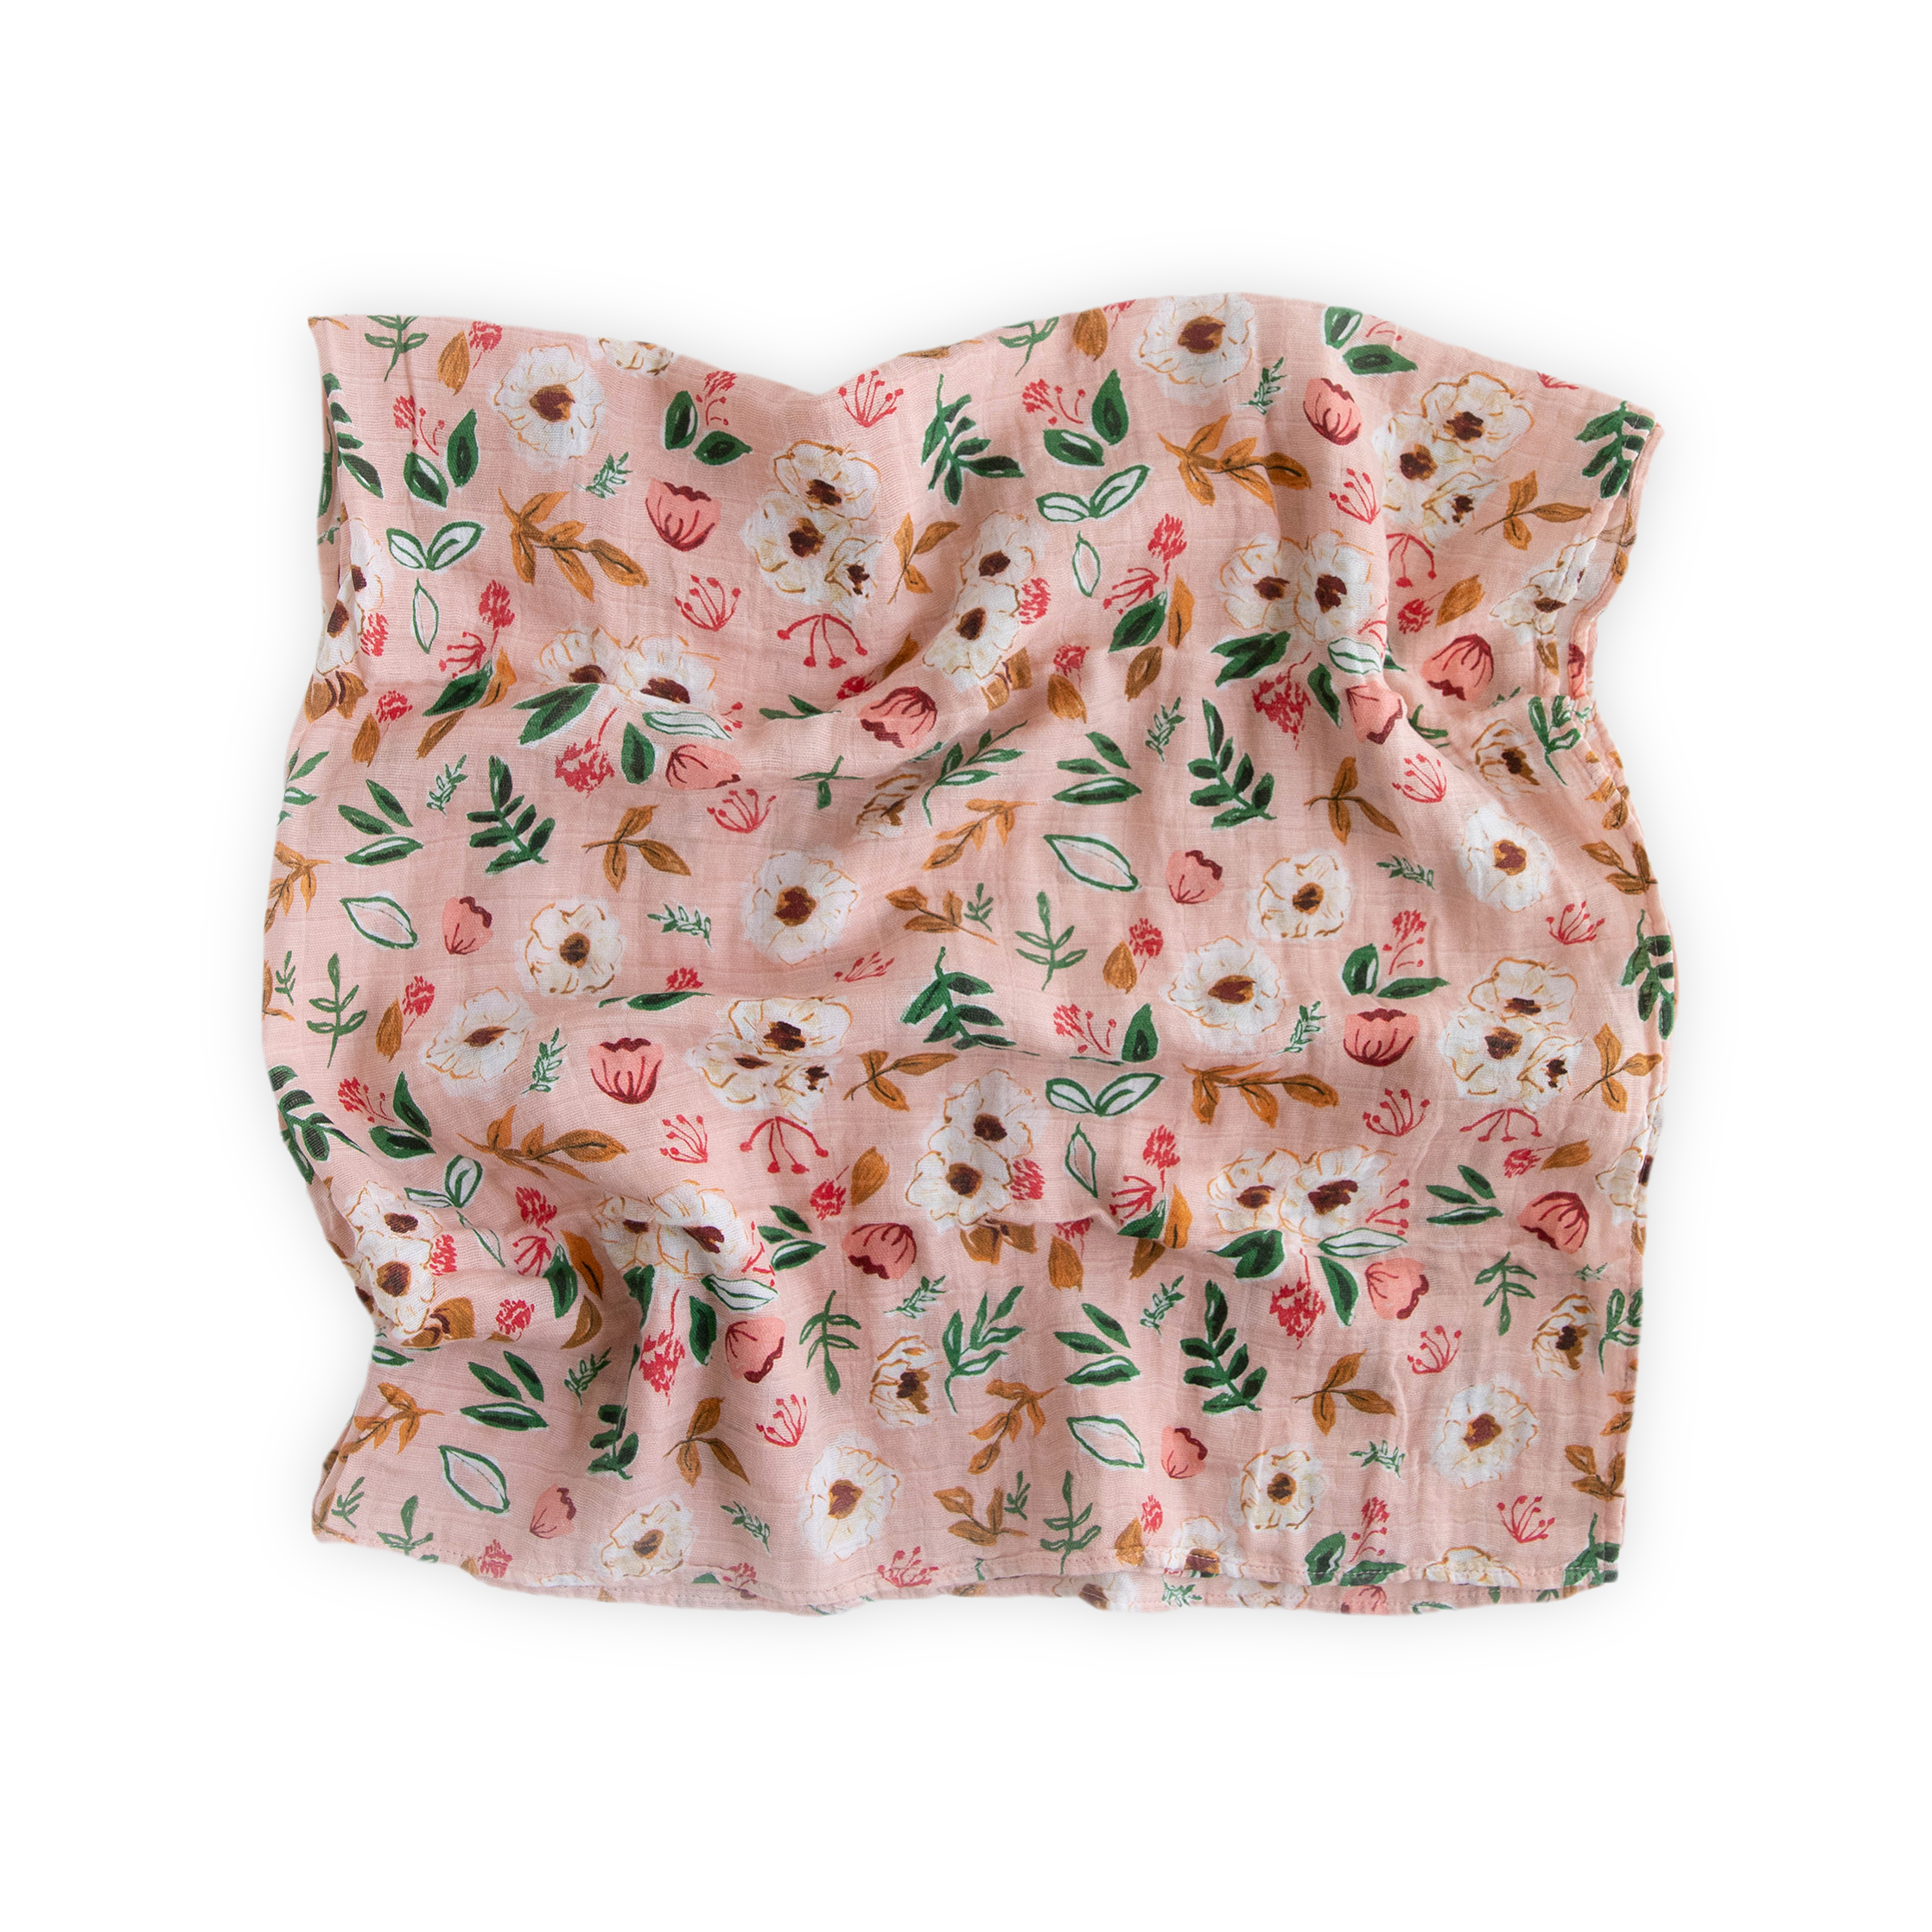 Baumwoll-Musselin Mulltuch Decke - Vintage Floral